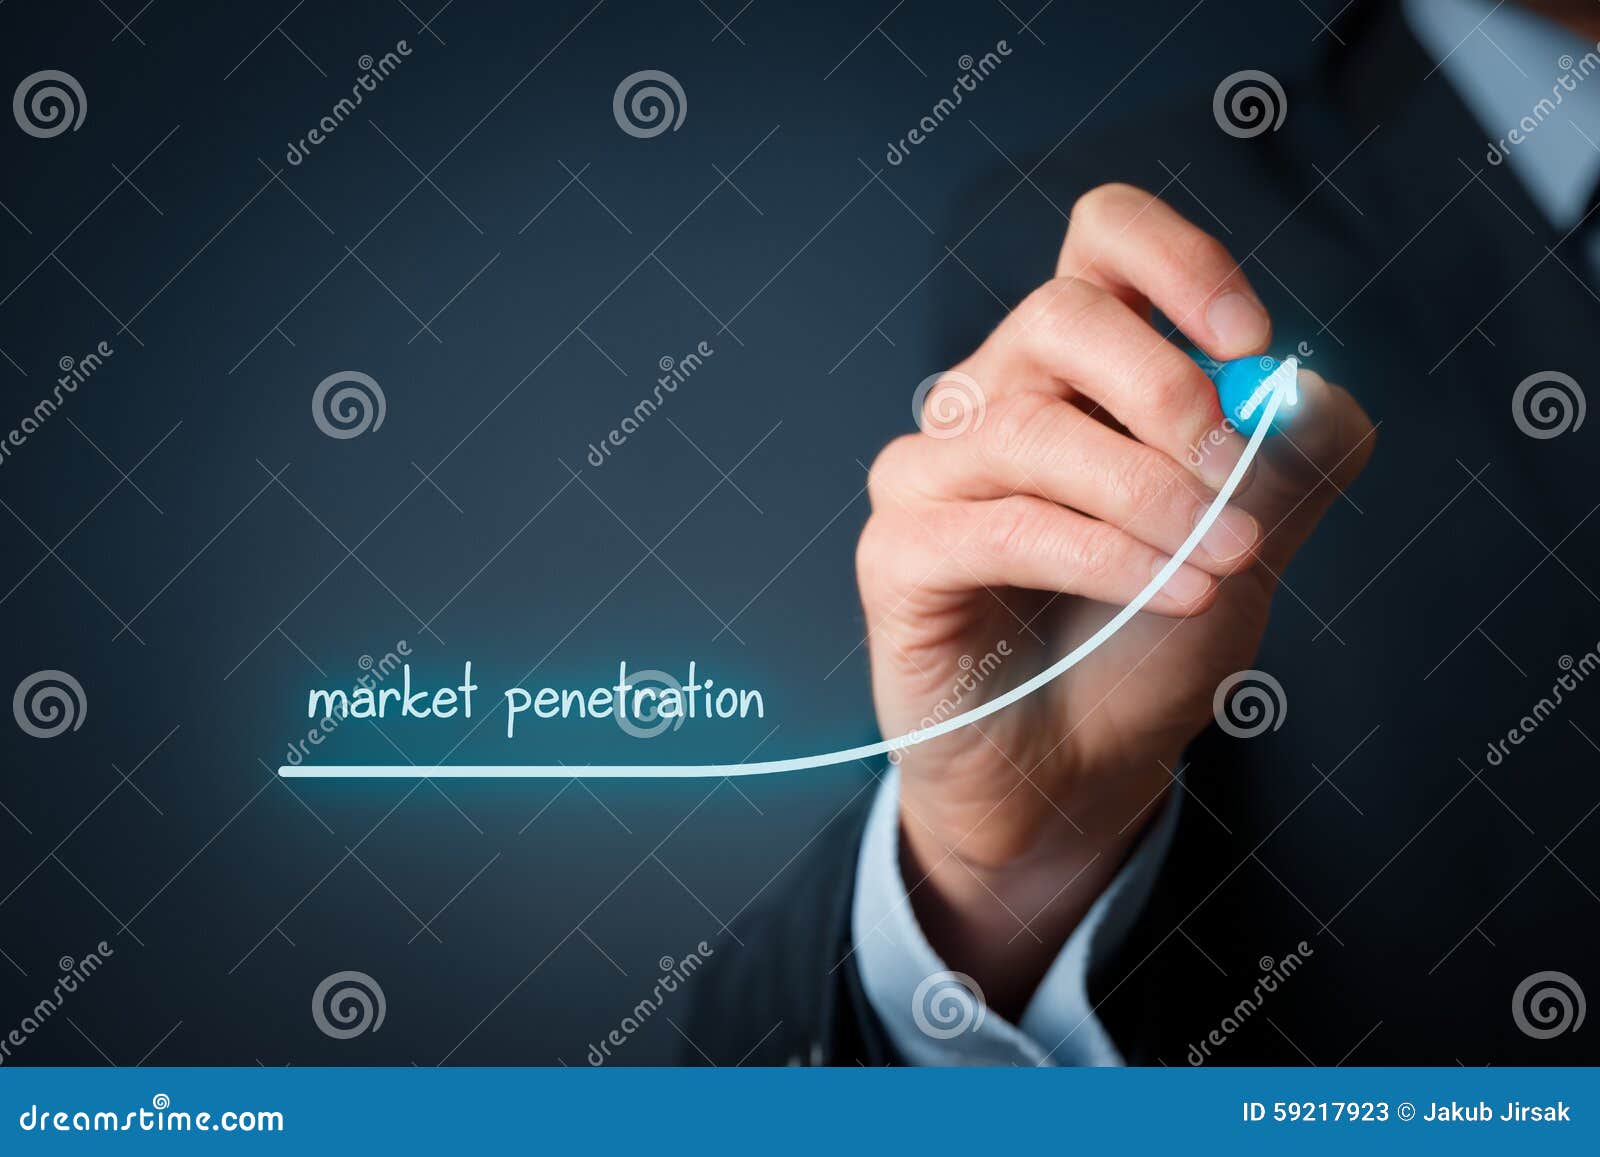 Increase Market Penetration 108